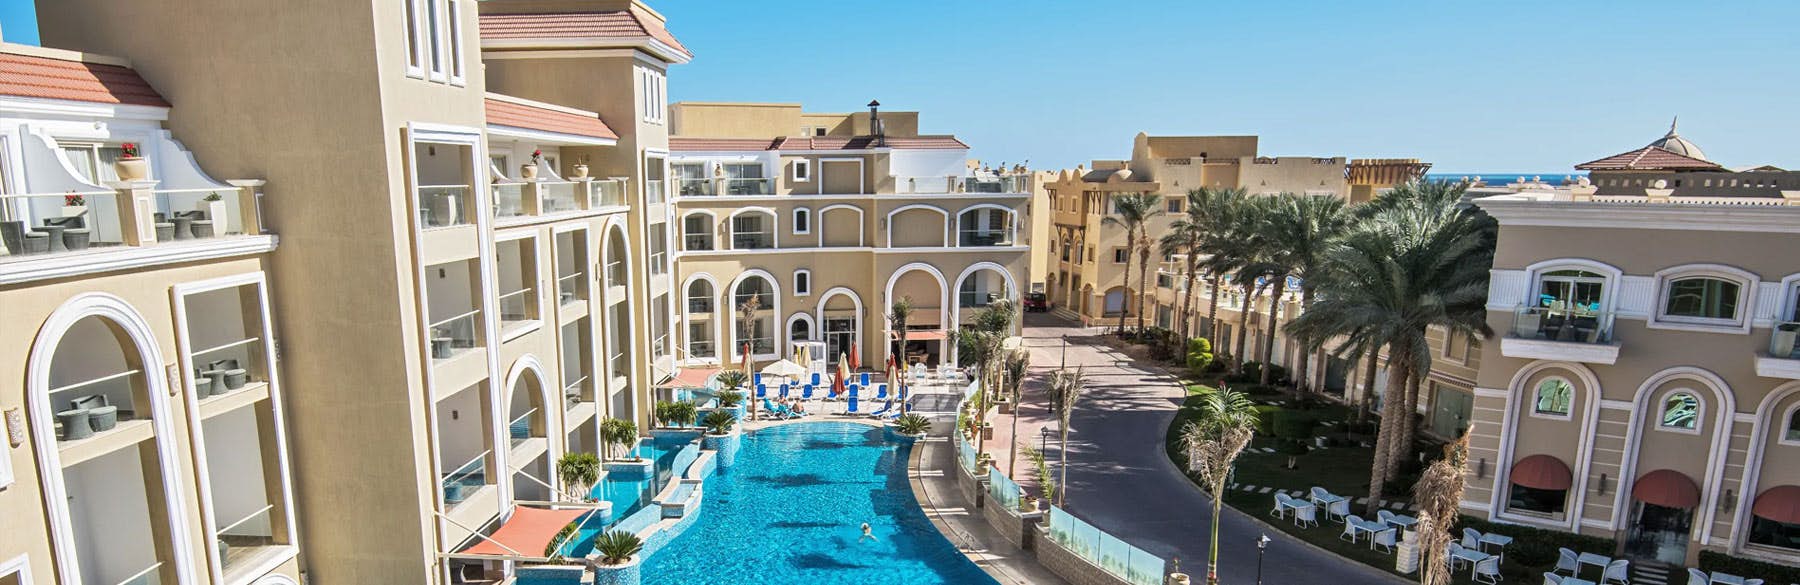 KaiSol Romance Resort Sahl Hasheesh, Hurghada